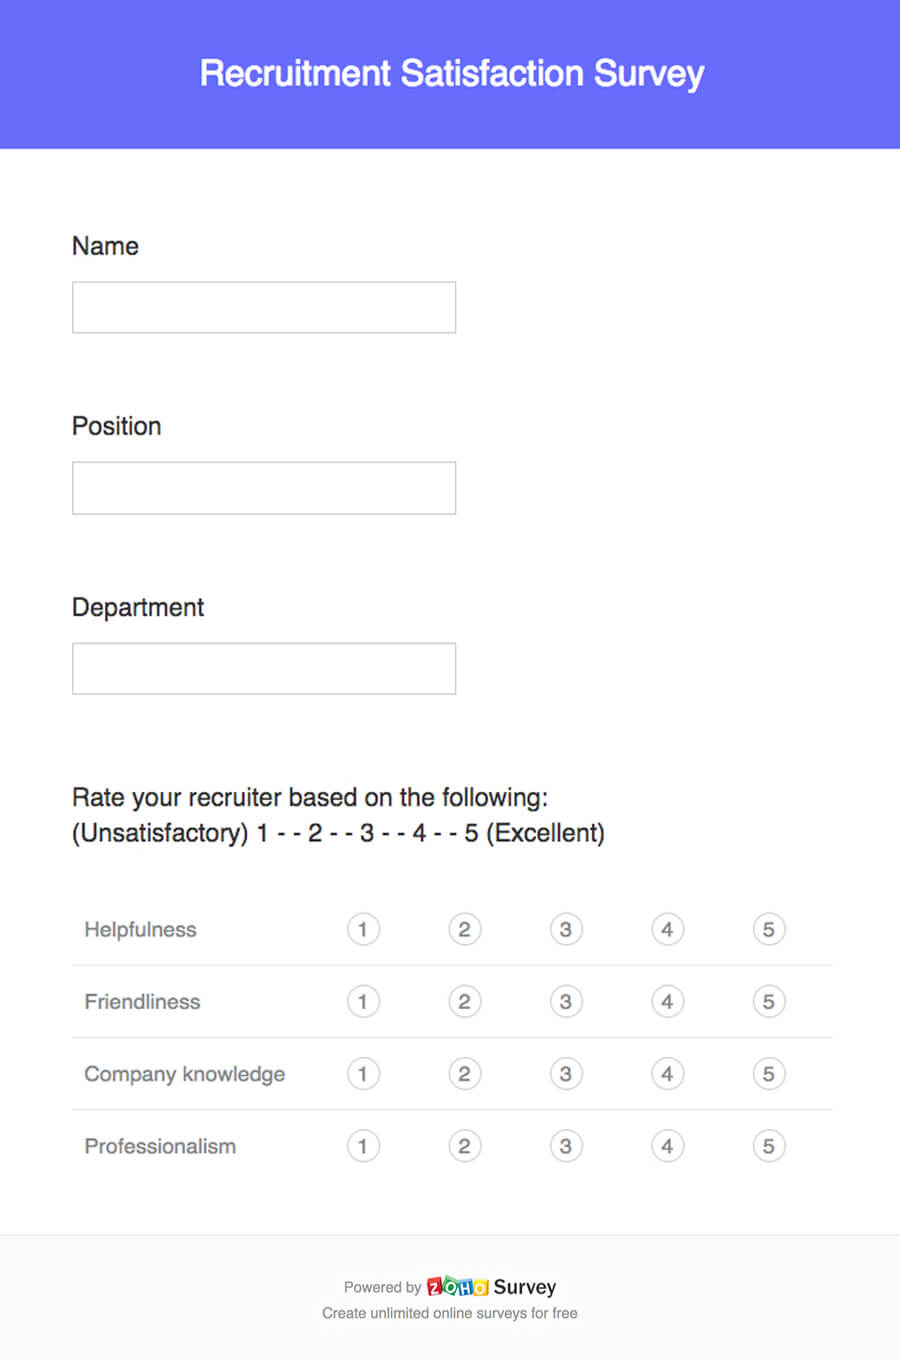 Recruitment satisfaction survey questionnaire template